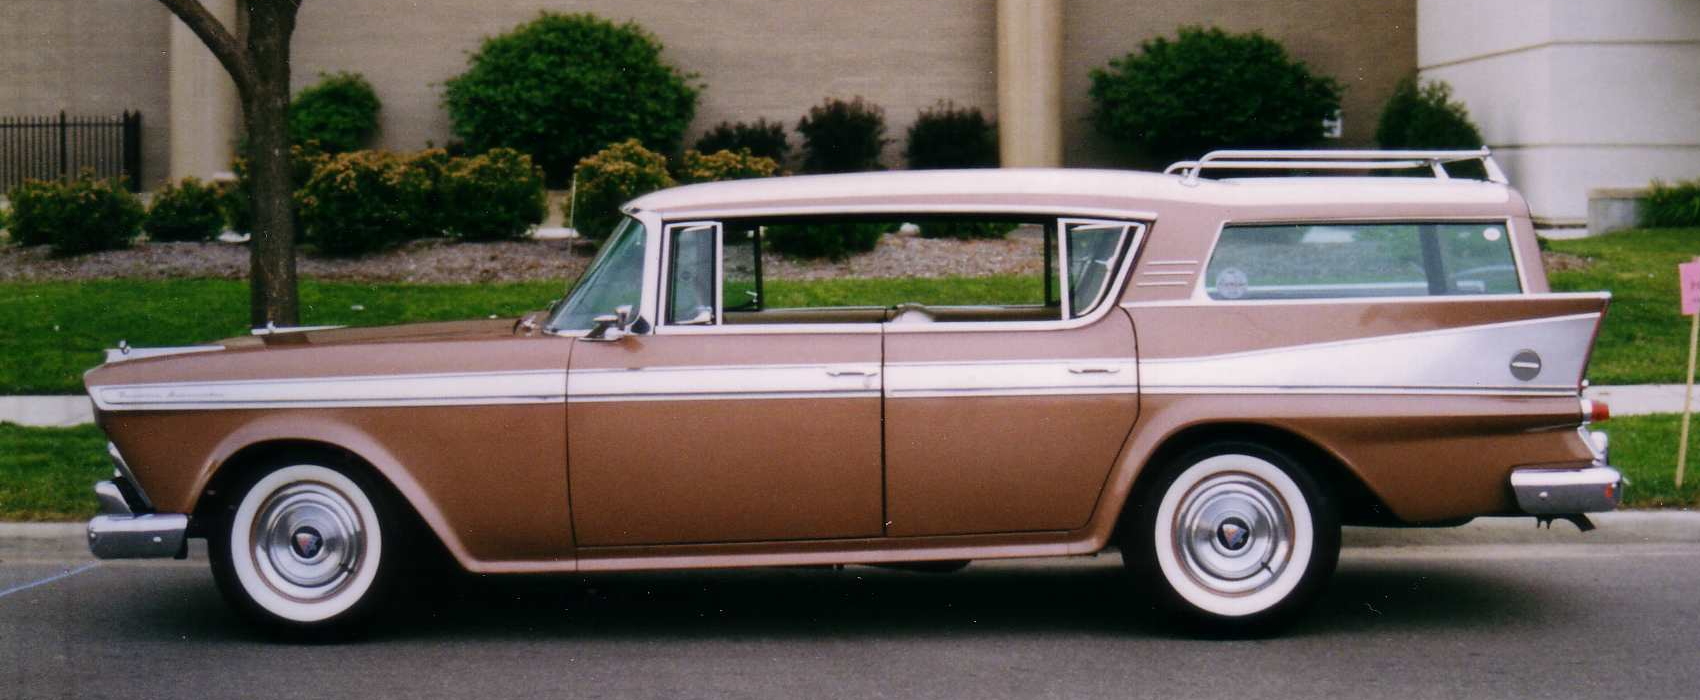 American Motors Ambassador 1958 #1